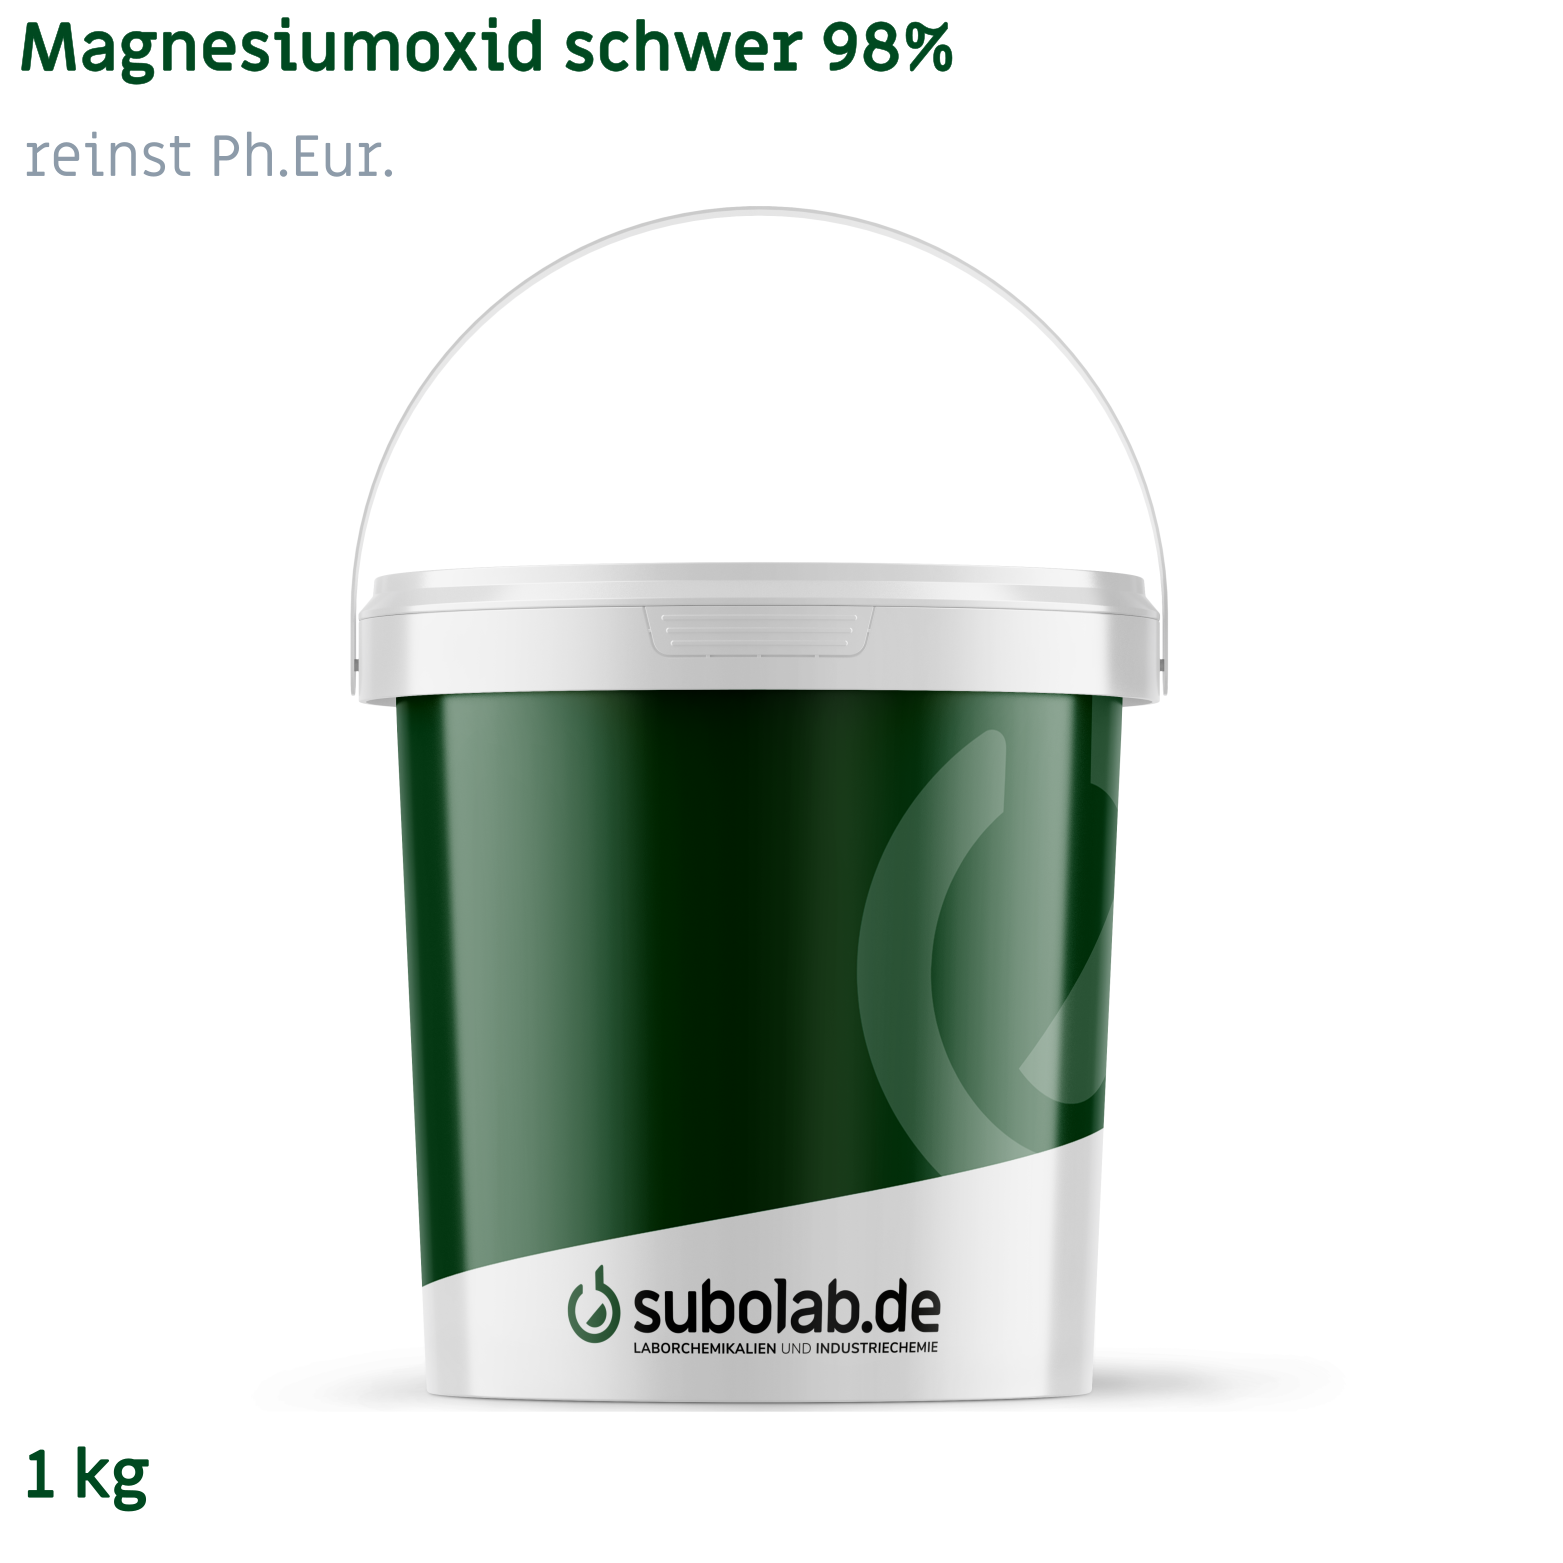 Bild von Magnesiumoxid schwer 98% reinst Ph.Eur. (1 kg)